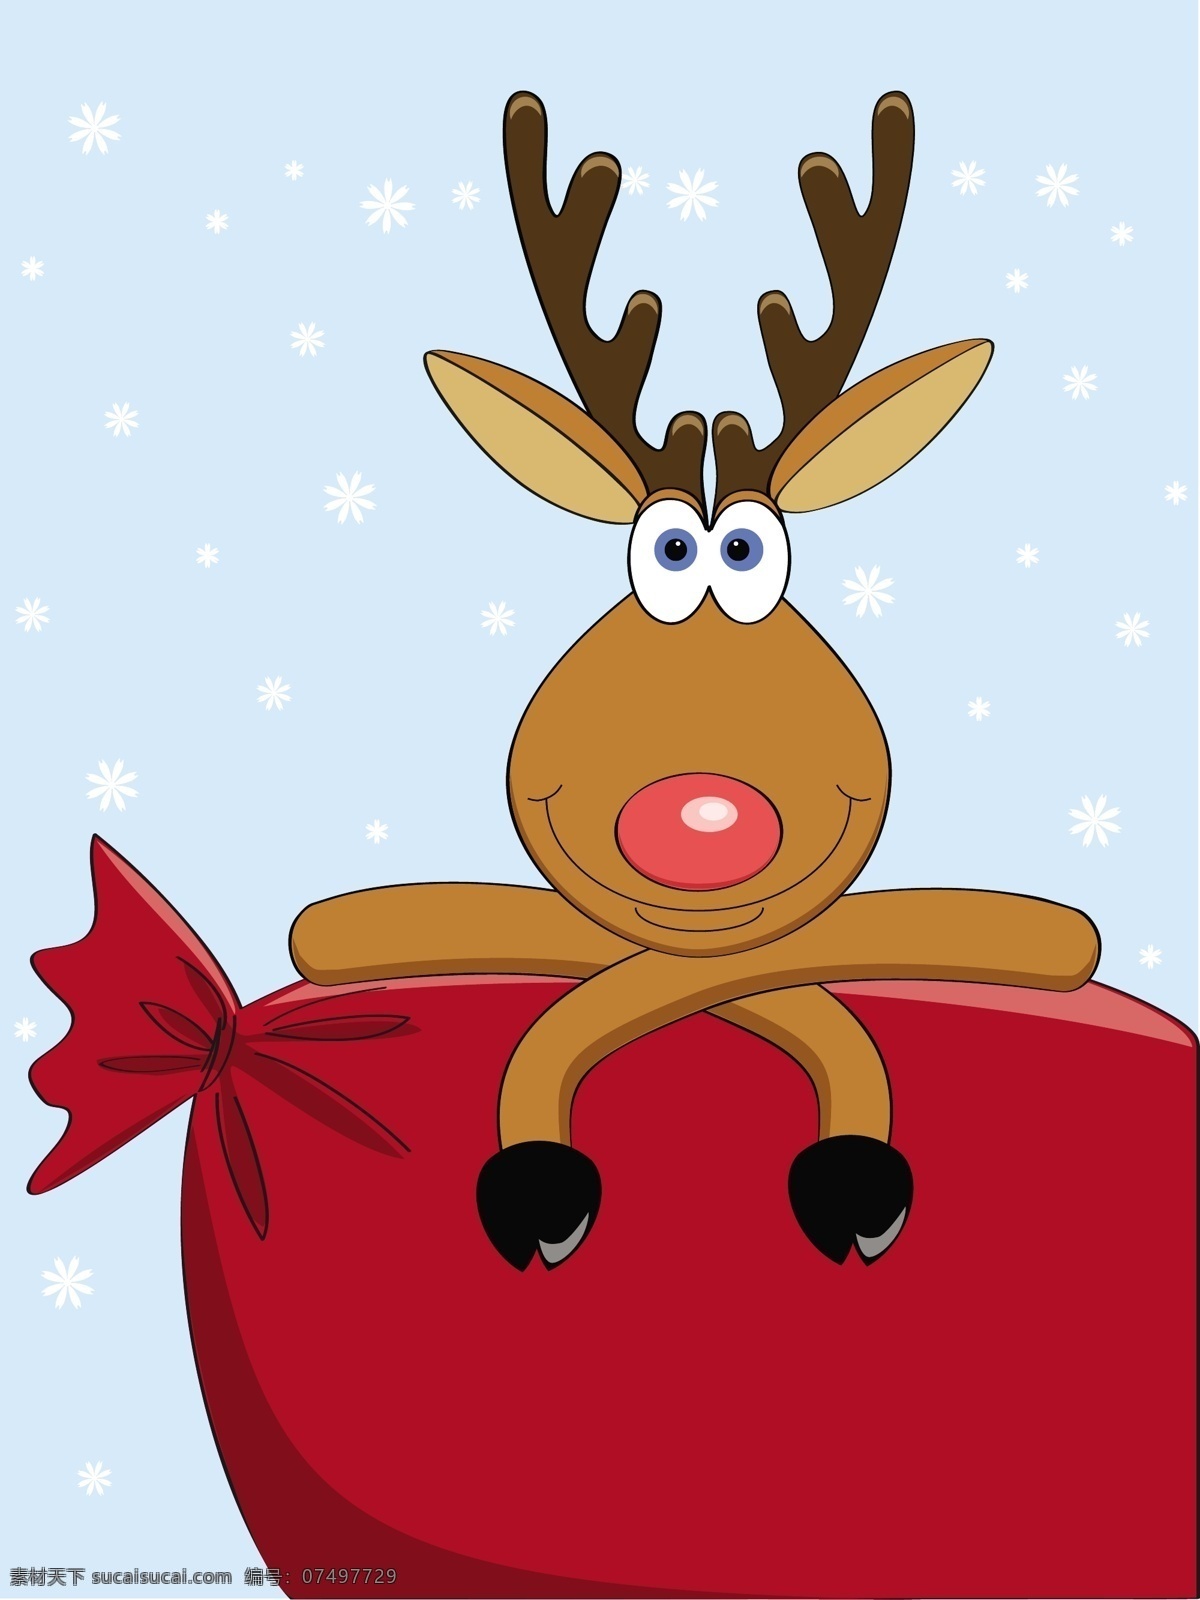 插画 冬季 动感 节日素材 卡通 卡通圣诞麋鹿 圣诞 麋鹿 矢量 可爱 模板下载 圣诞节 圣诞鹿 雪花 矢量素材 元素 插画集